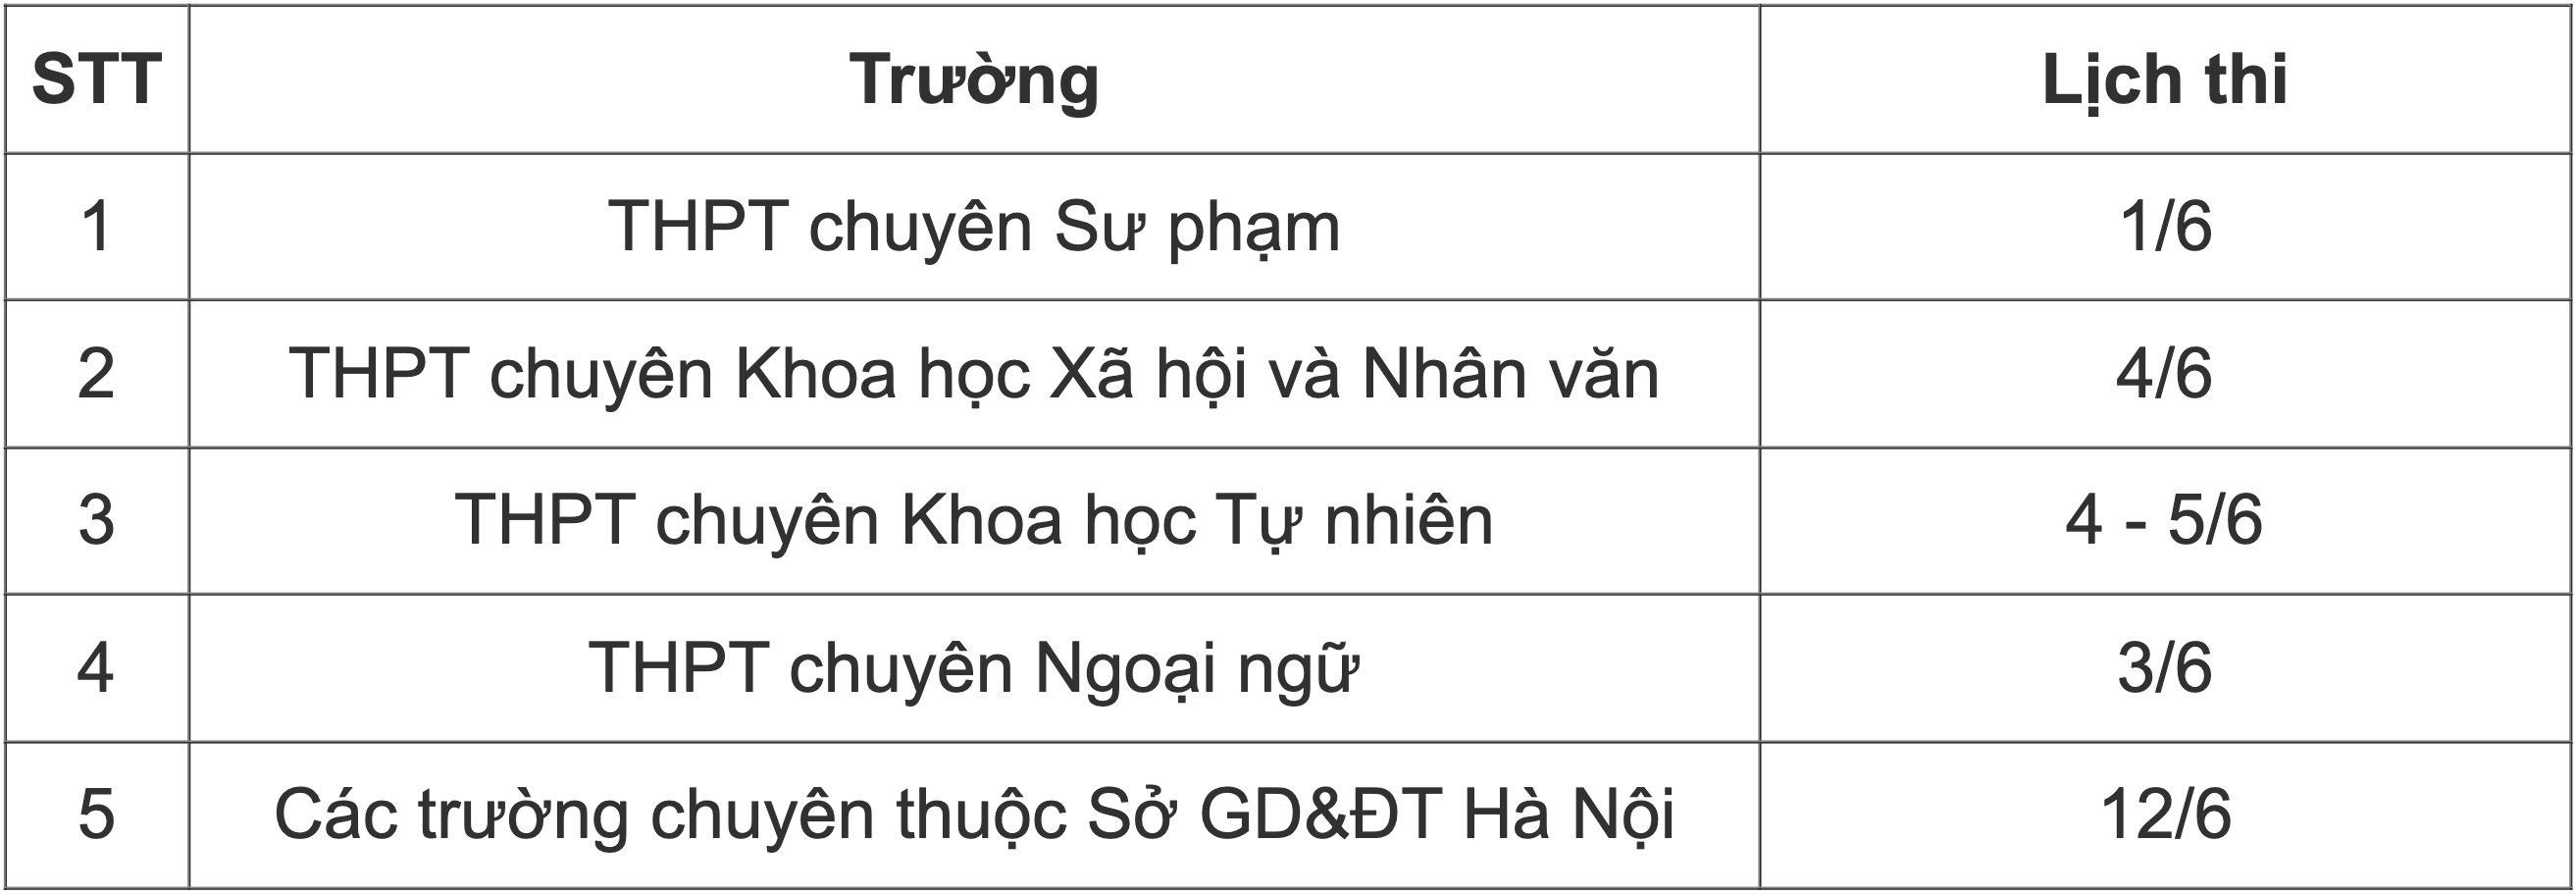 Chi tiết tỷ lệ chọi vào 7 trường THPT chuyên ở Hà Nội - 2